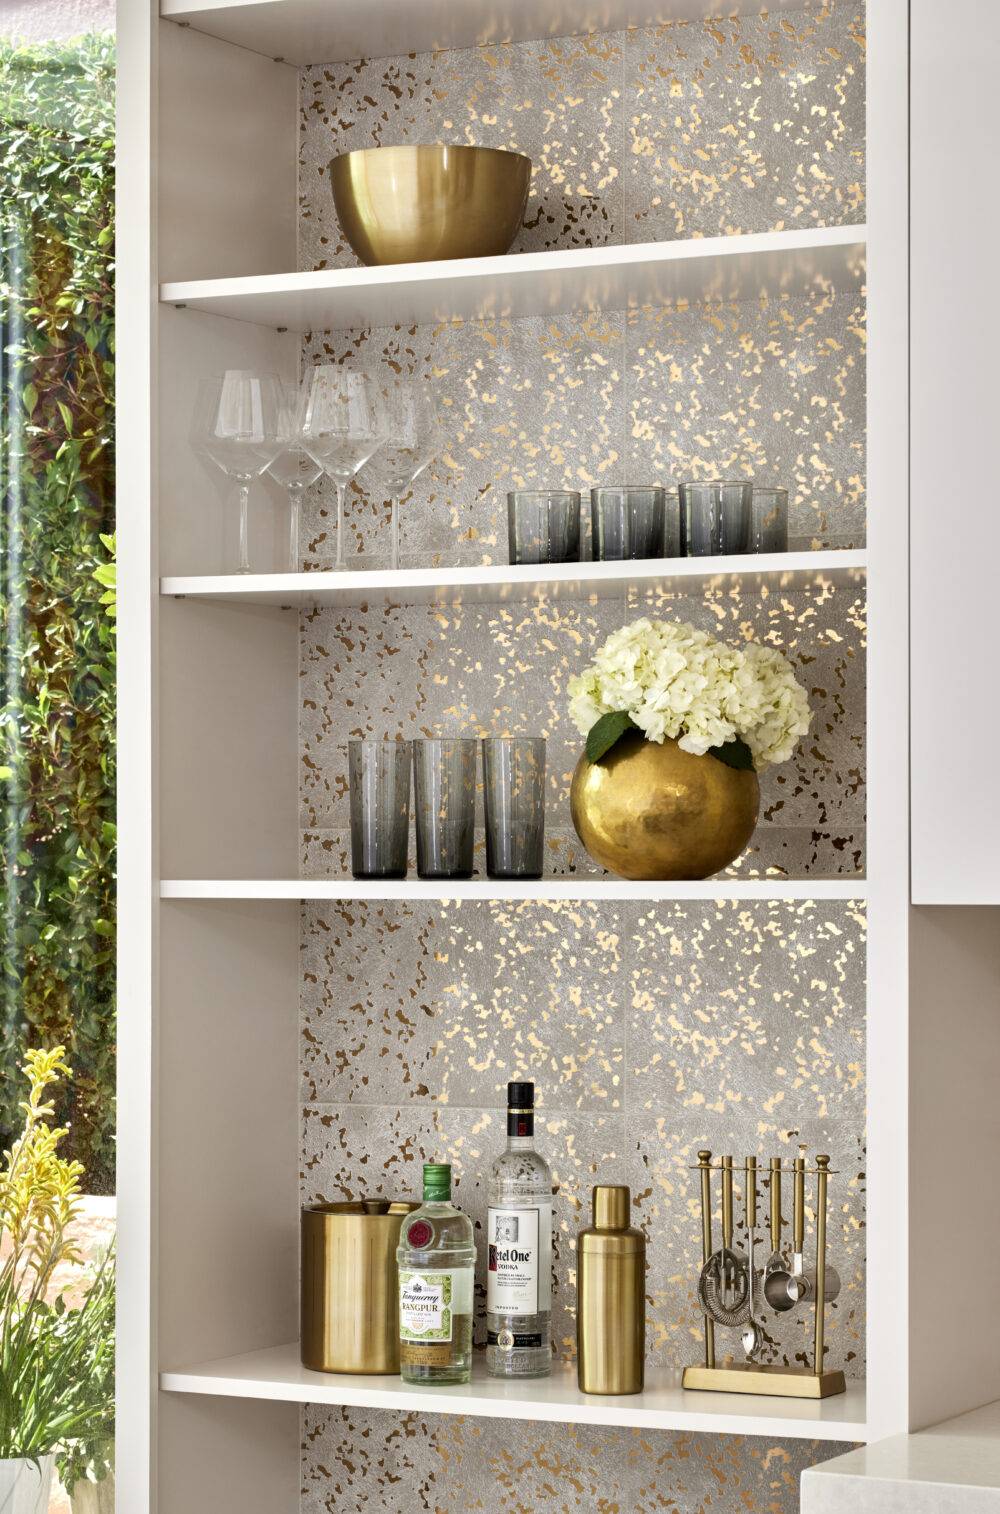 Gold speckled white tile backsplash with bar shelves.